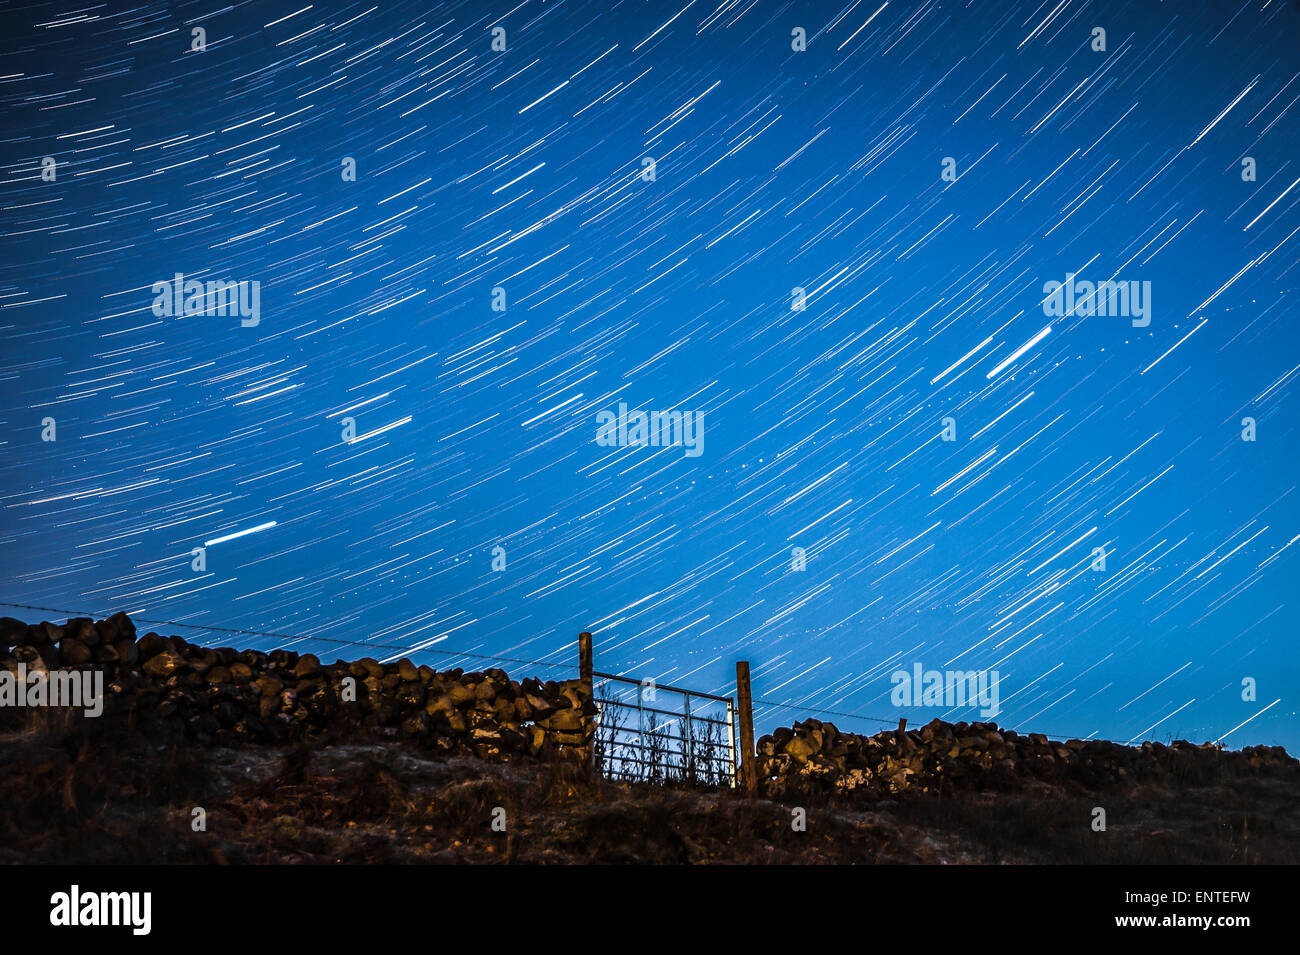 Star Trail dans le ciel de nuit - étoile dans un ciel étoilé dans l'obscurité, UK Banque D'Images